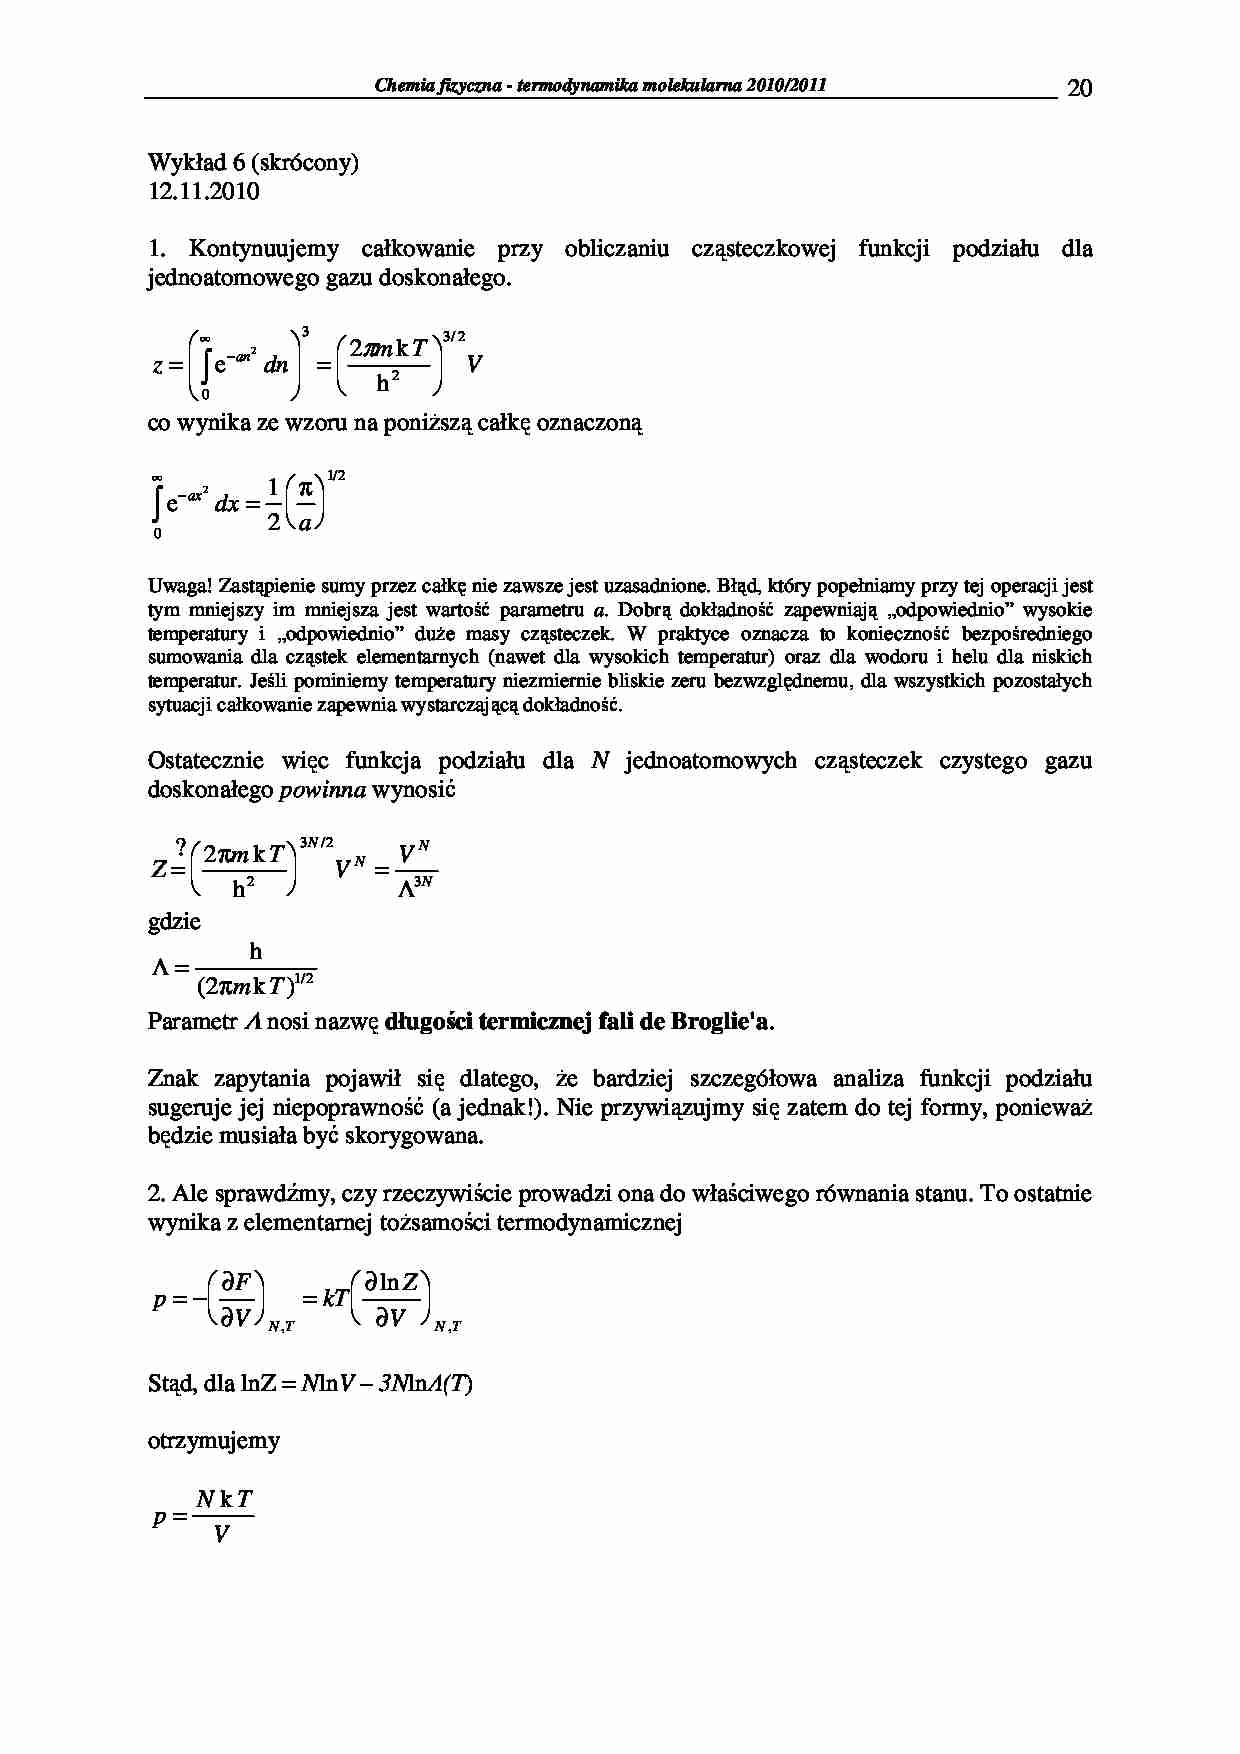 Chemia fizyczna - termodynamika molekularna 2009/2010-wykłady20 - strona 1